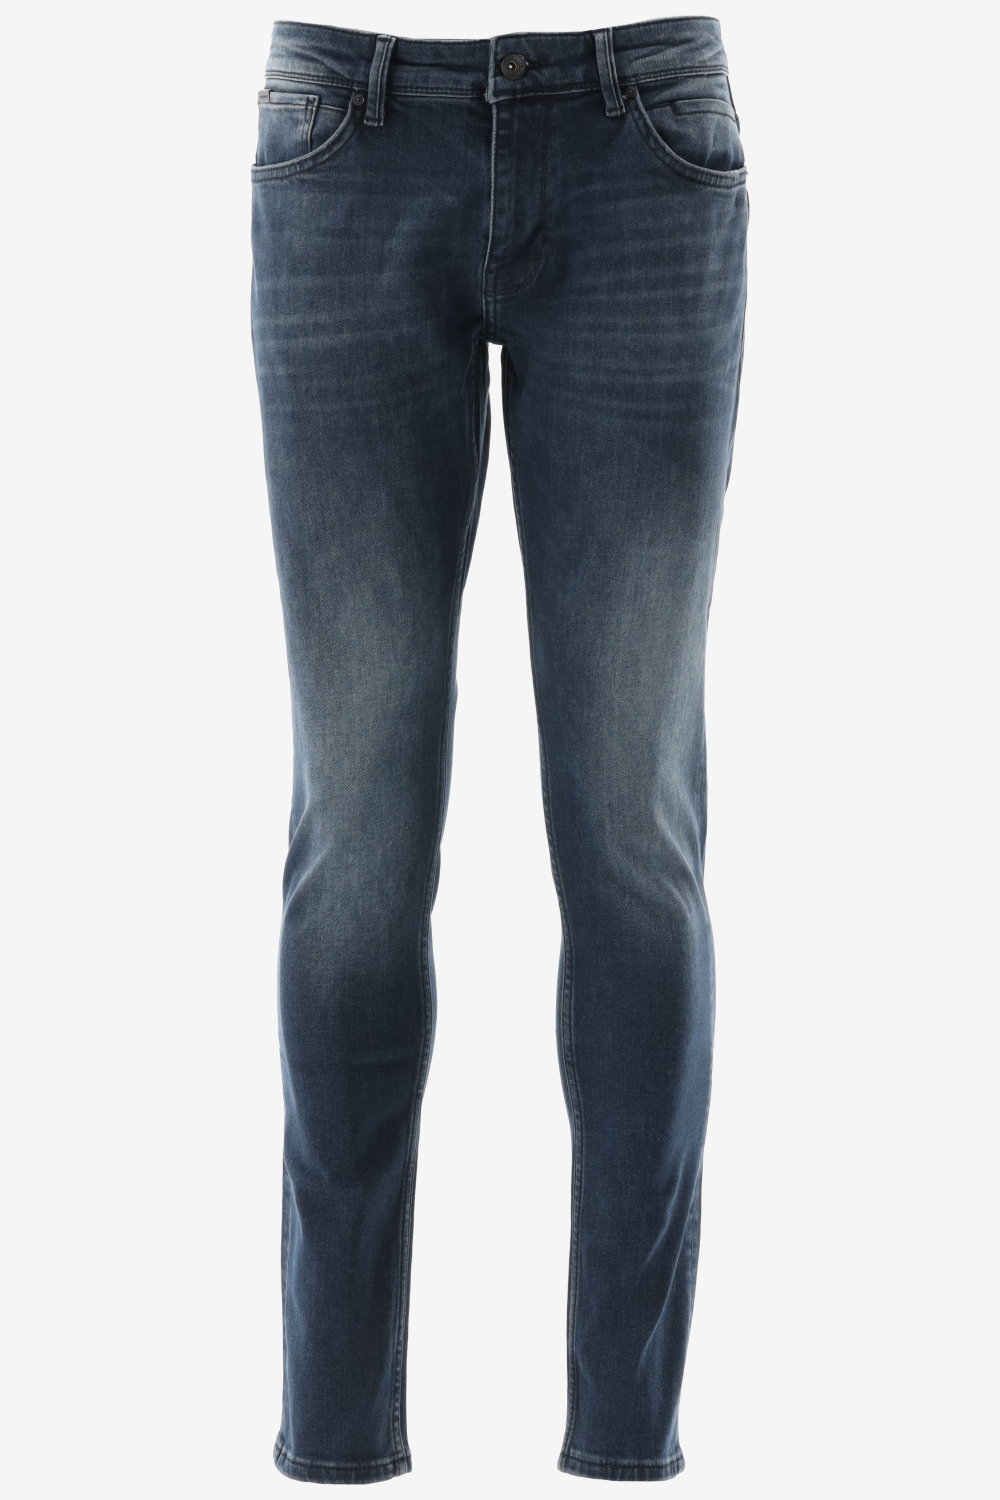 Purewhite - Jone Skinny Fit Heren Skinny Fit Jeans - Blauw - Maat 28